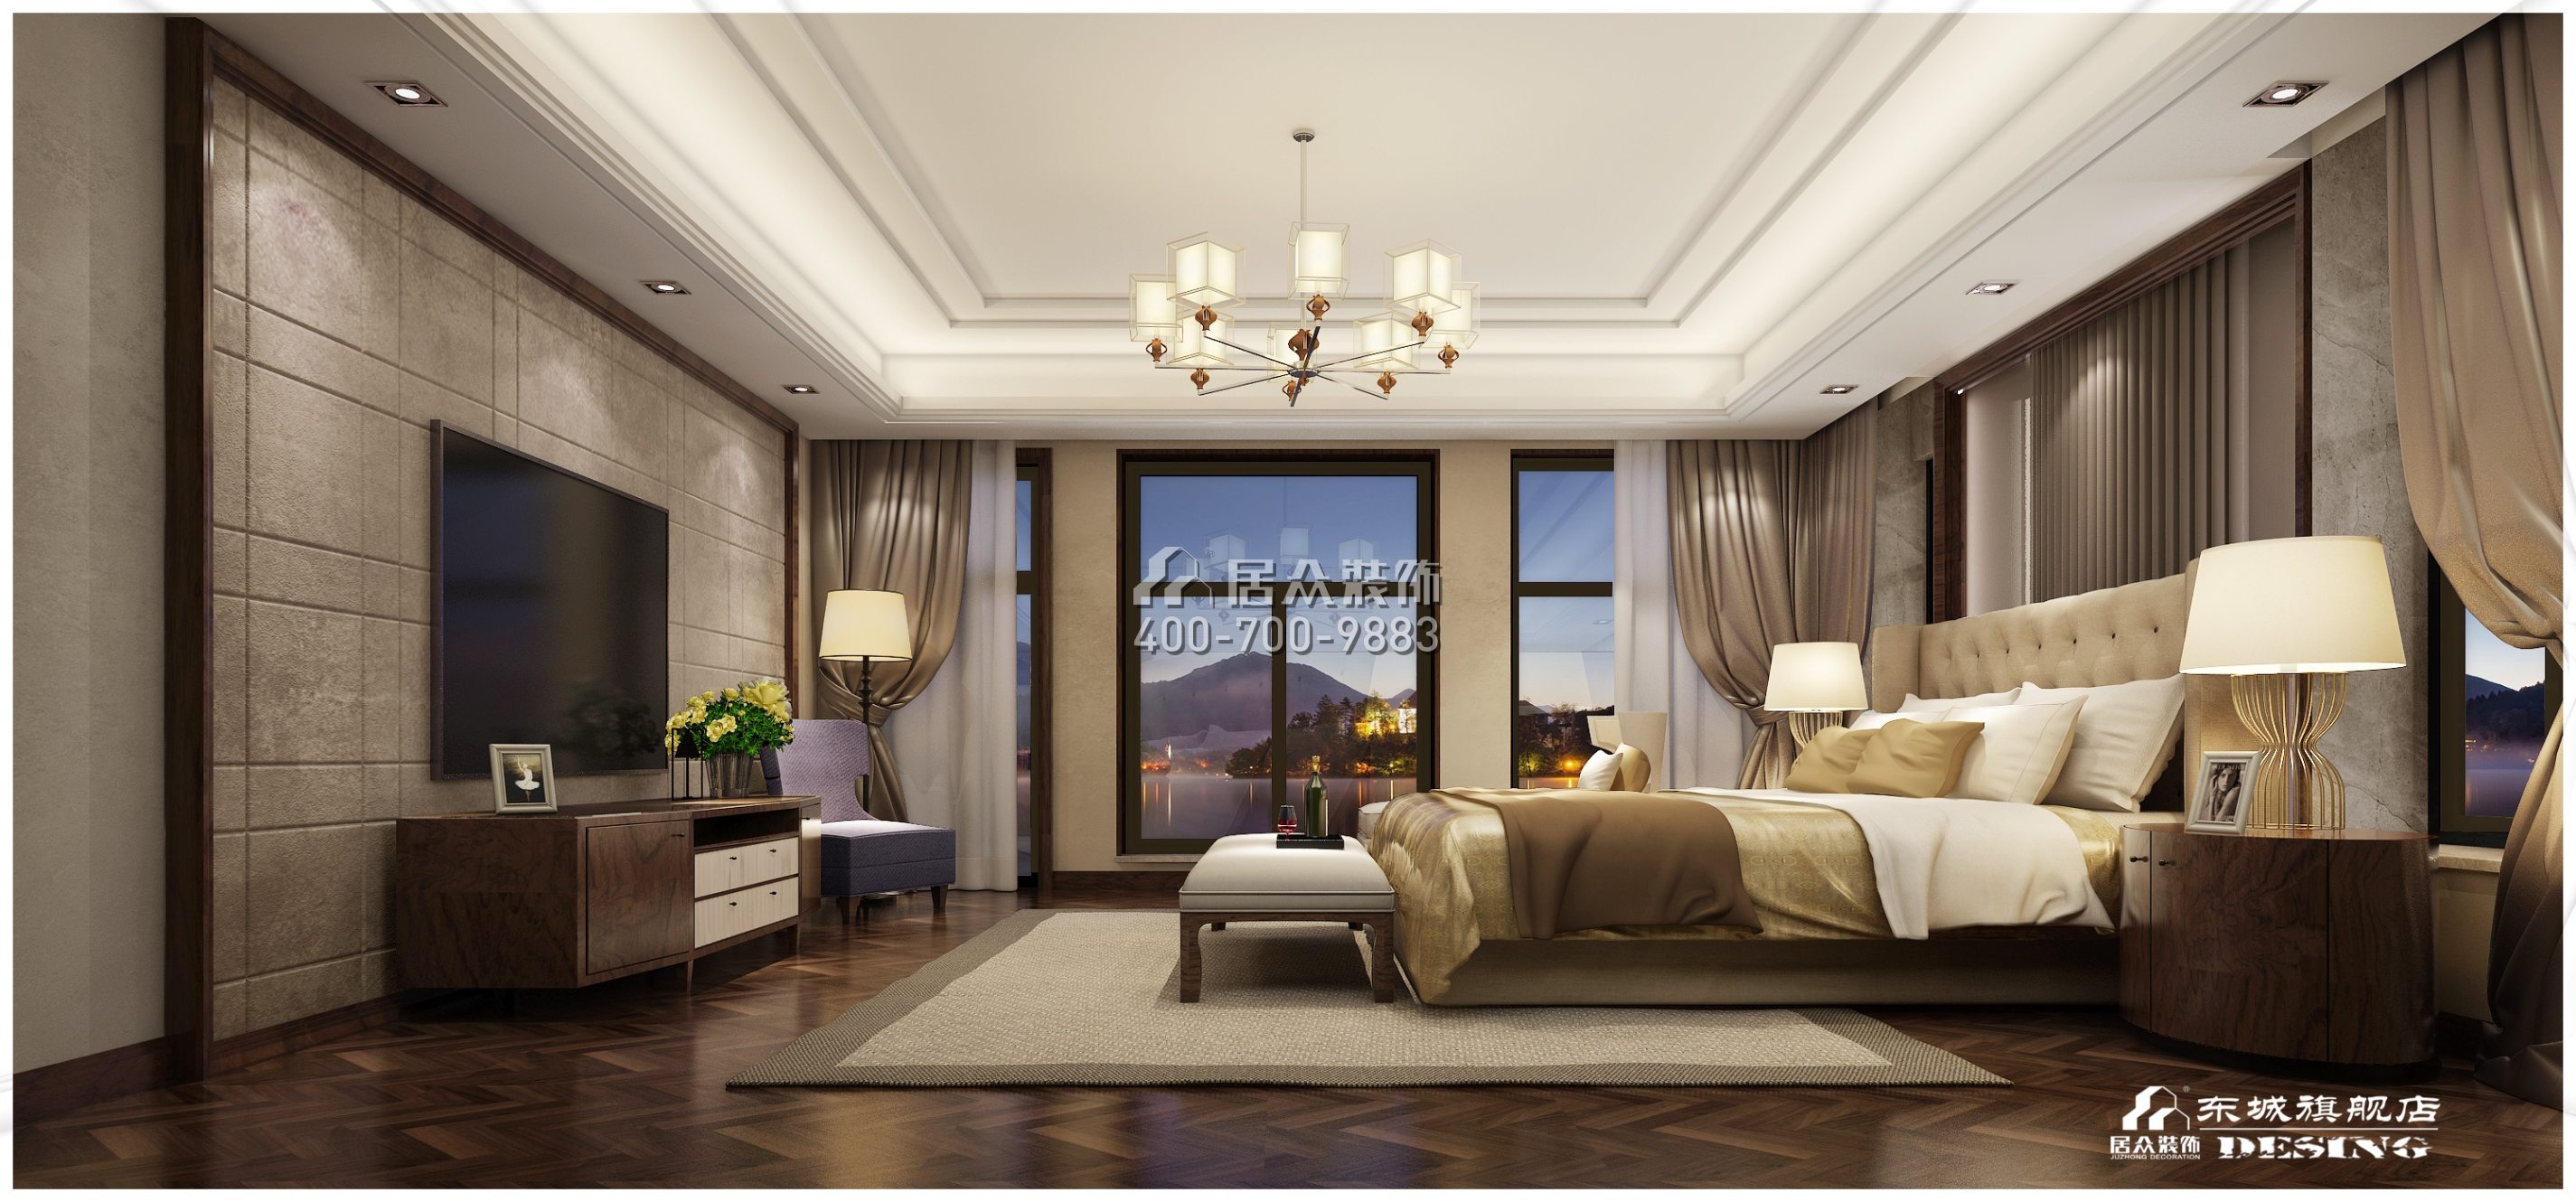 碧桂园翡翠湾1200平方米中式风格别墅户型卧室装修效果图